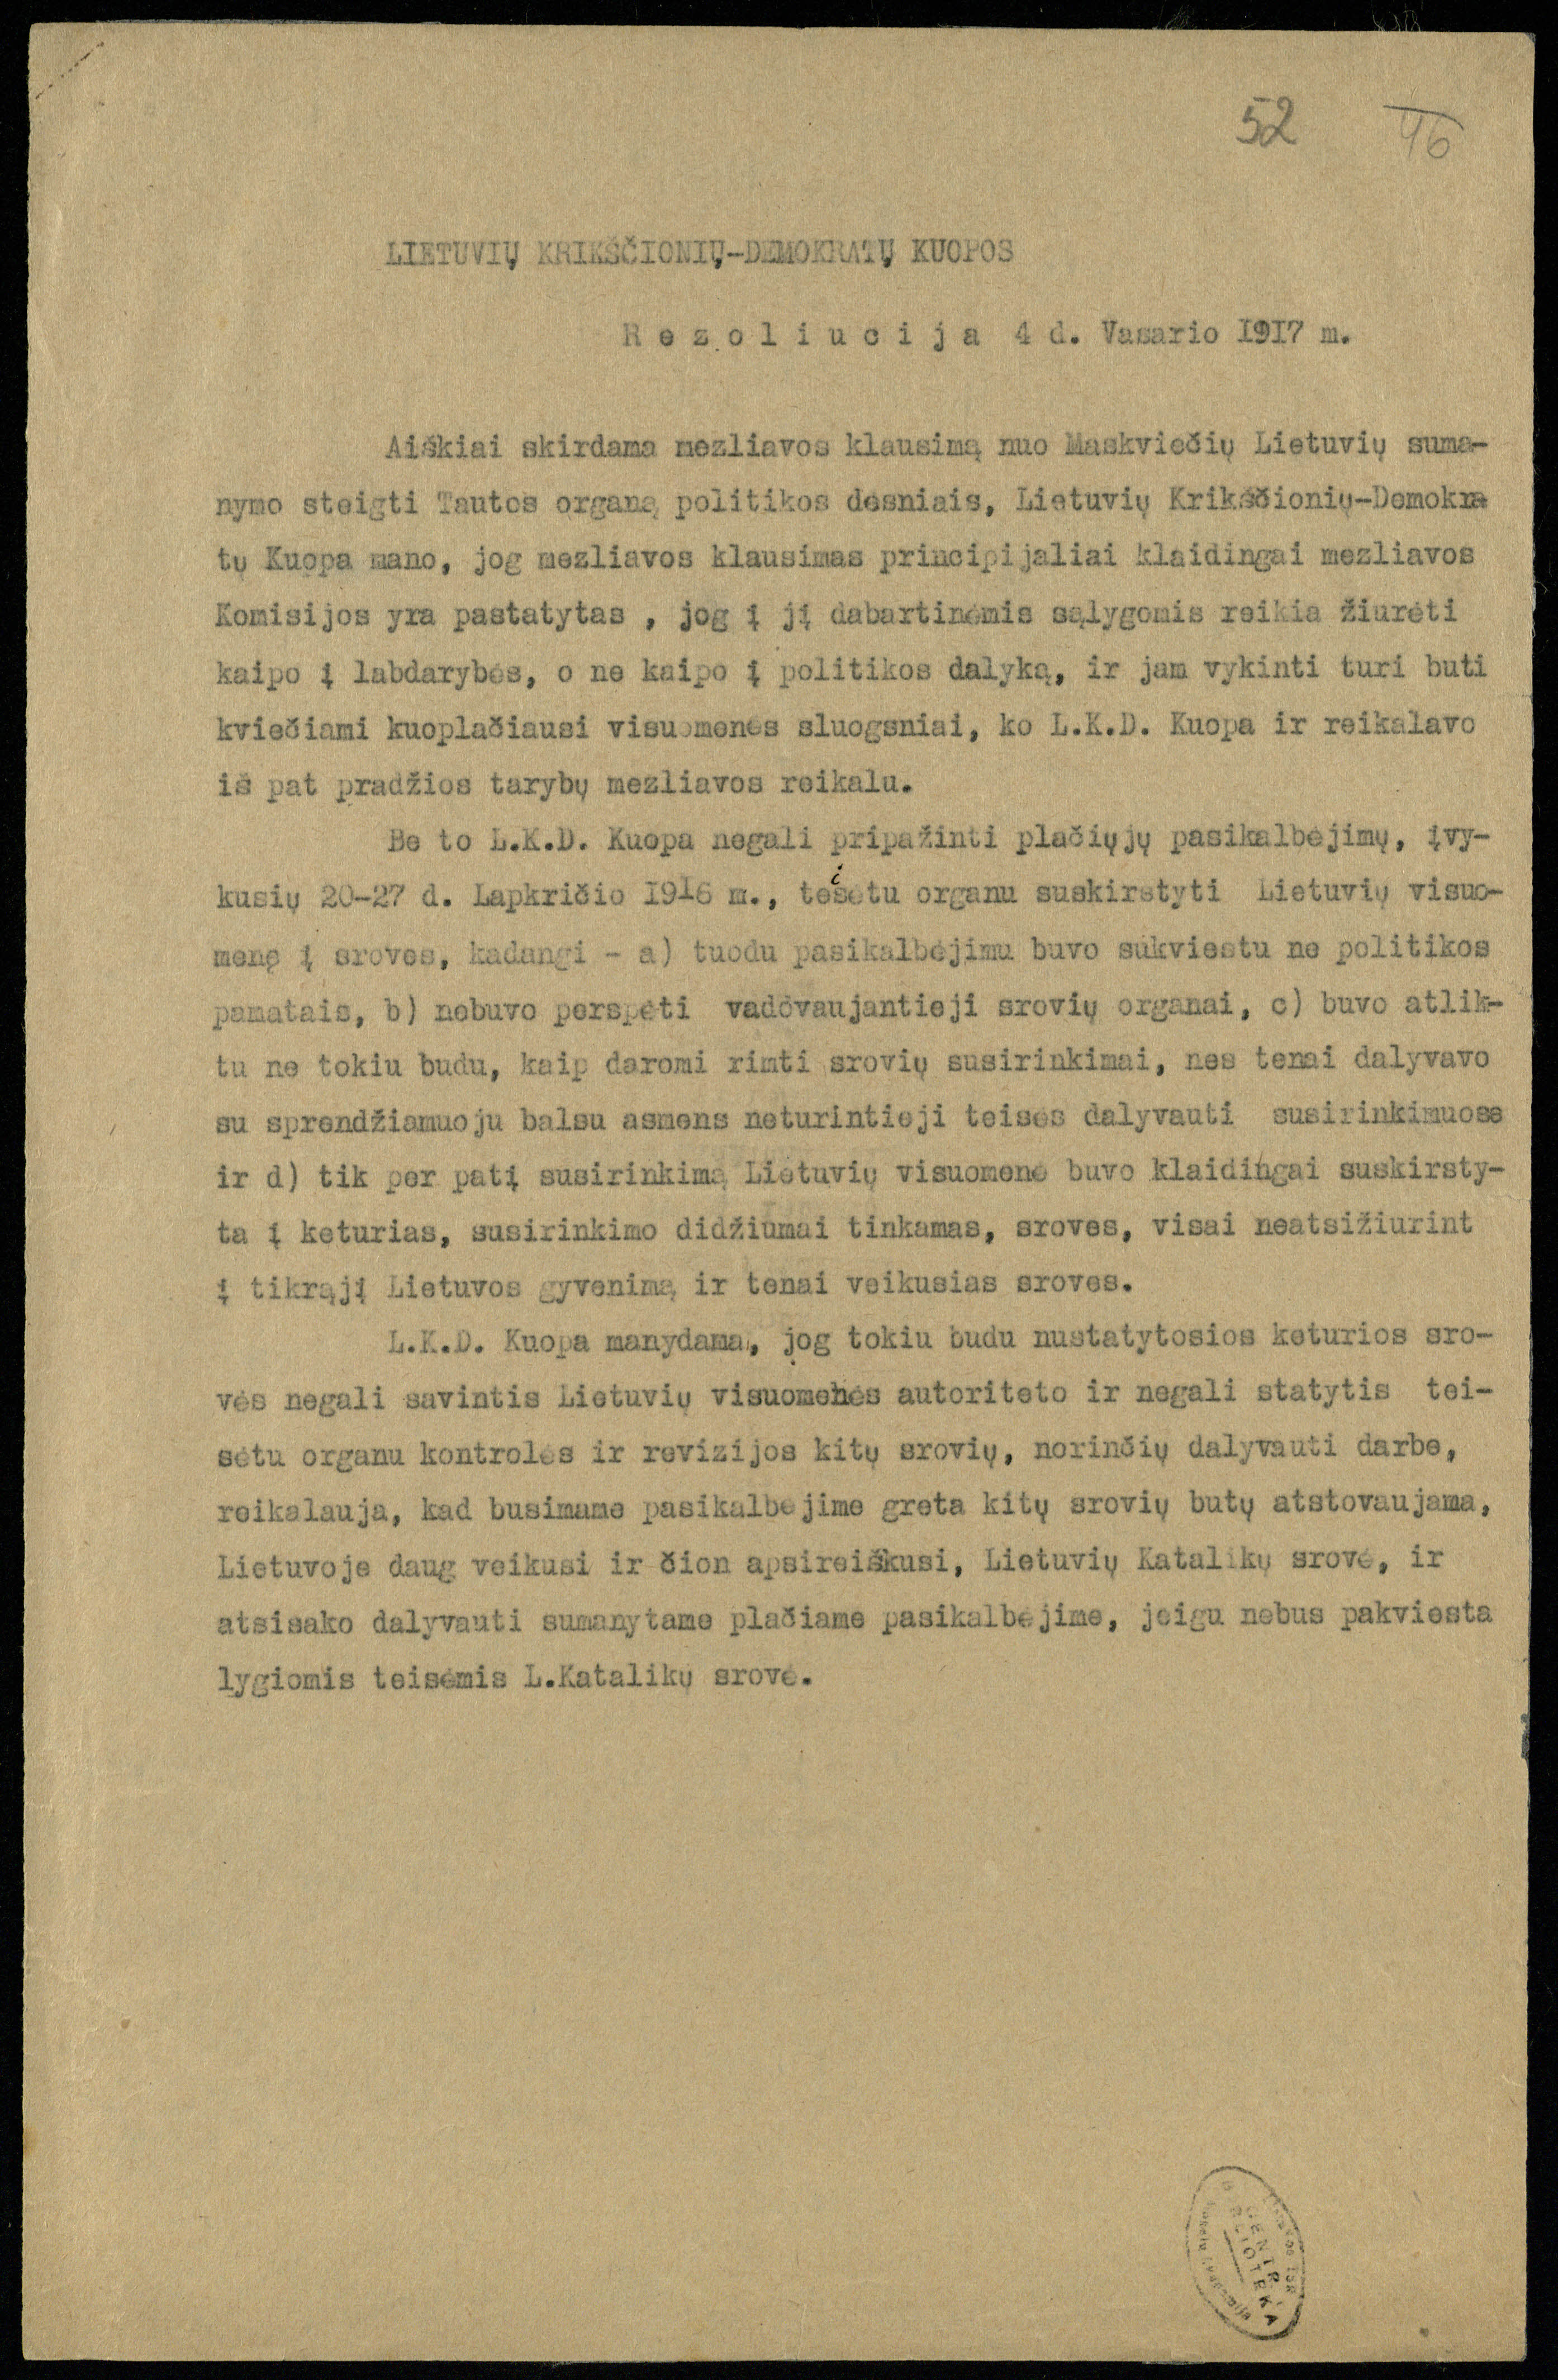 Lietuvių krikščionių demokratų kuopos rezoliucija dėl Tautos tarybos ir rinkliavos (mezliavos) komiteto steigimo